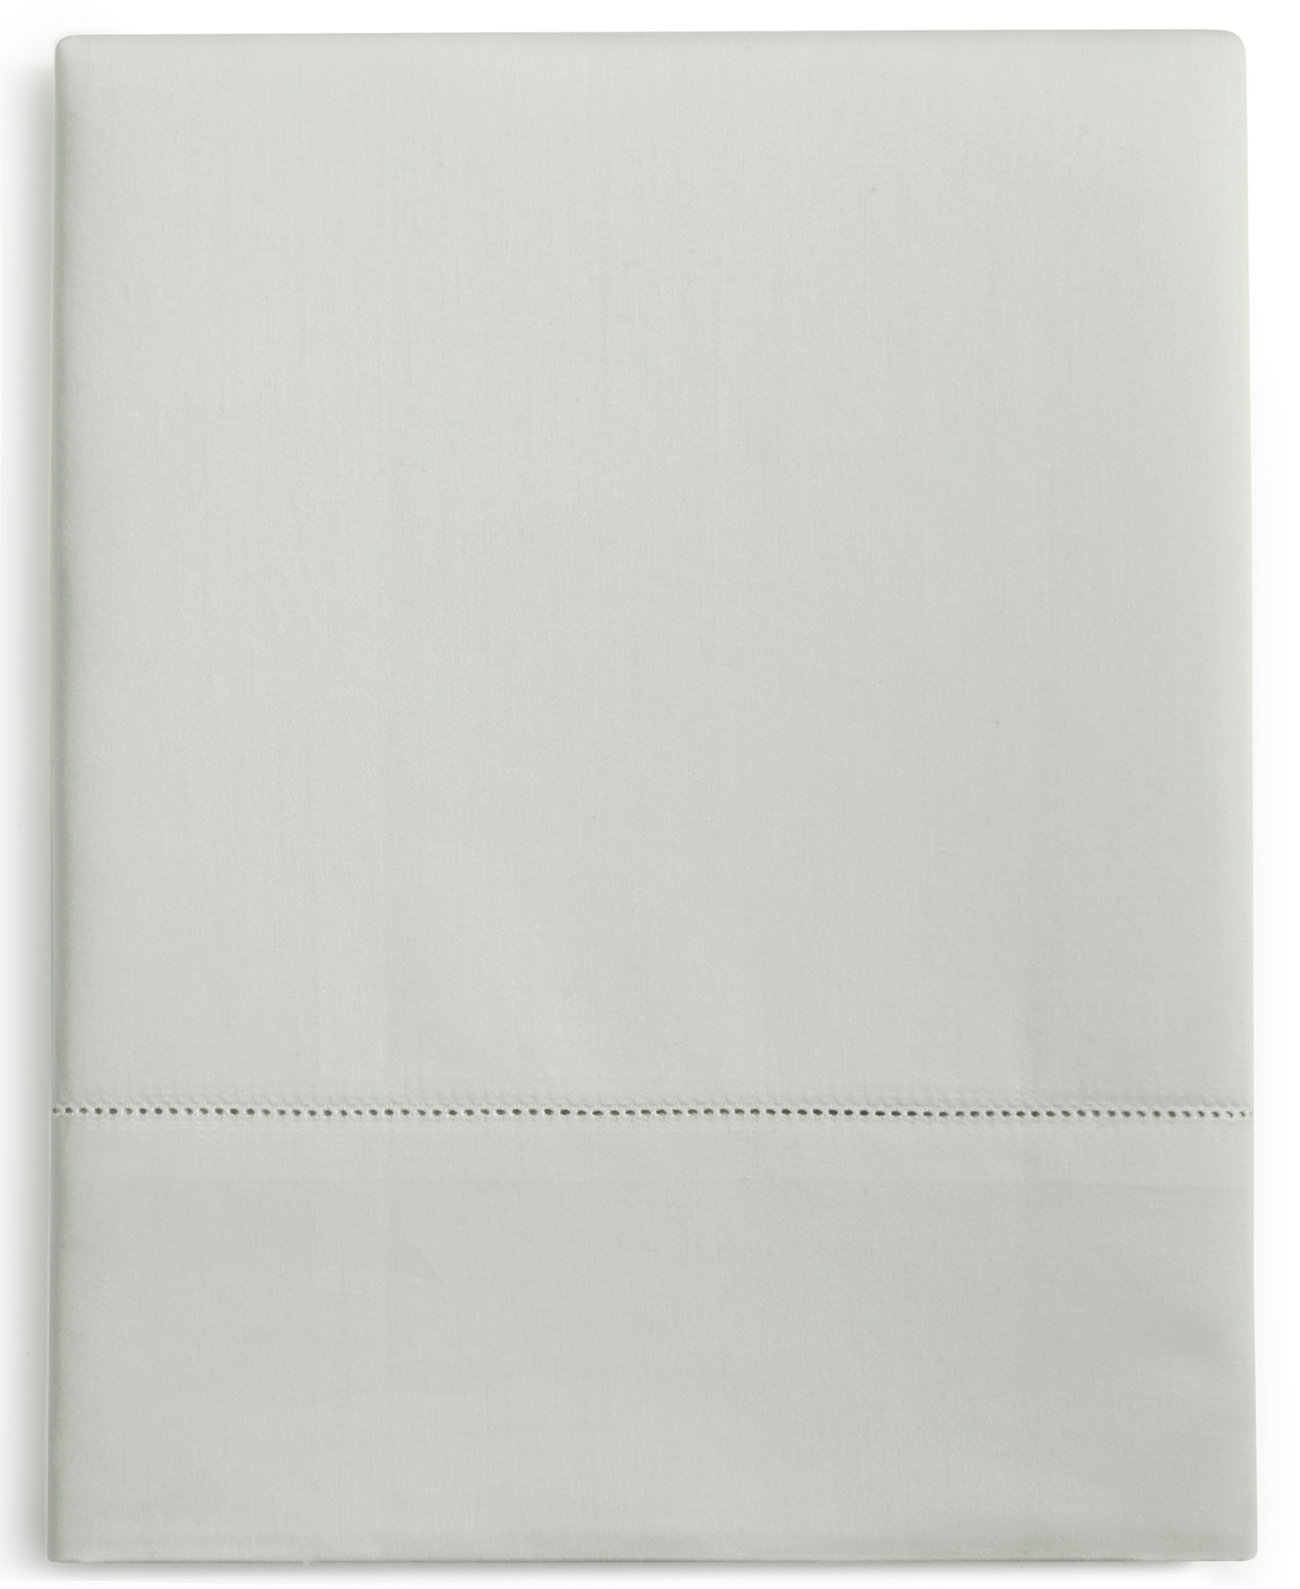 ЗАВЕРШЕНИЕ! Плоский лист из 100% хлопка Supima плотностью 680 нитей, полный, созданный для Macy's Hotel Collection